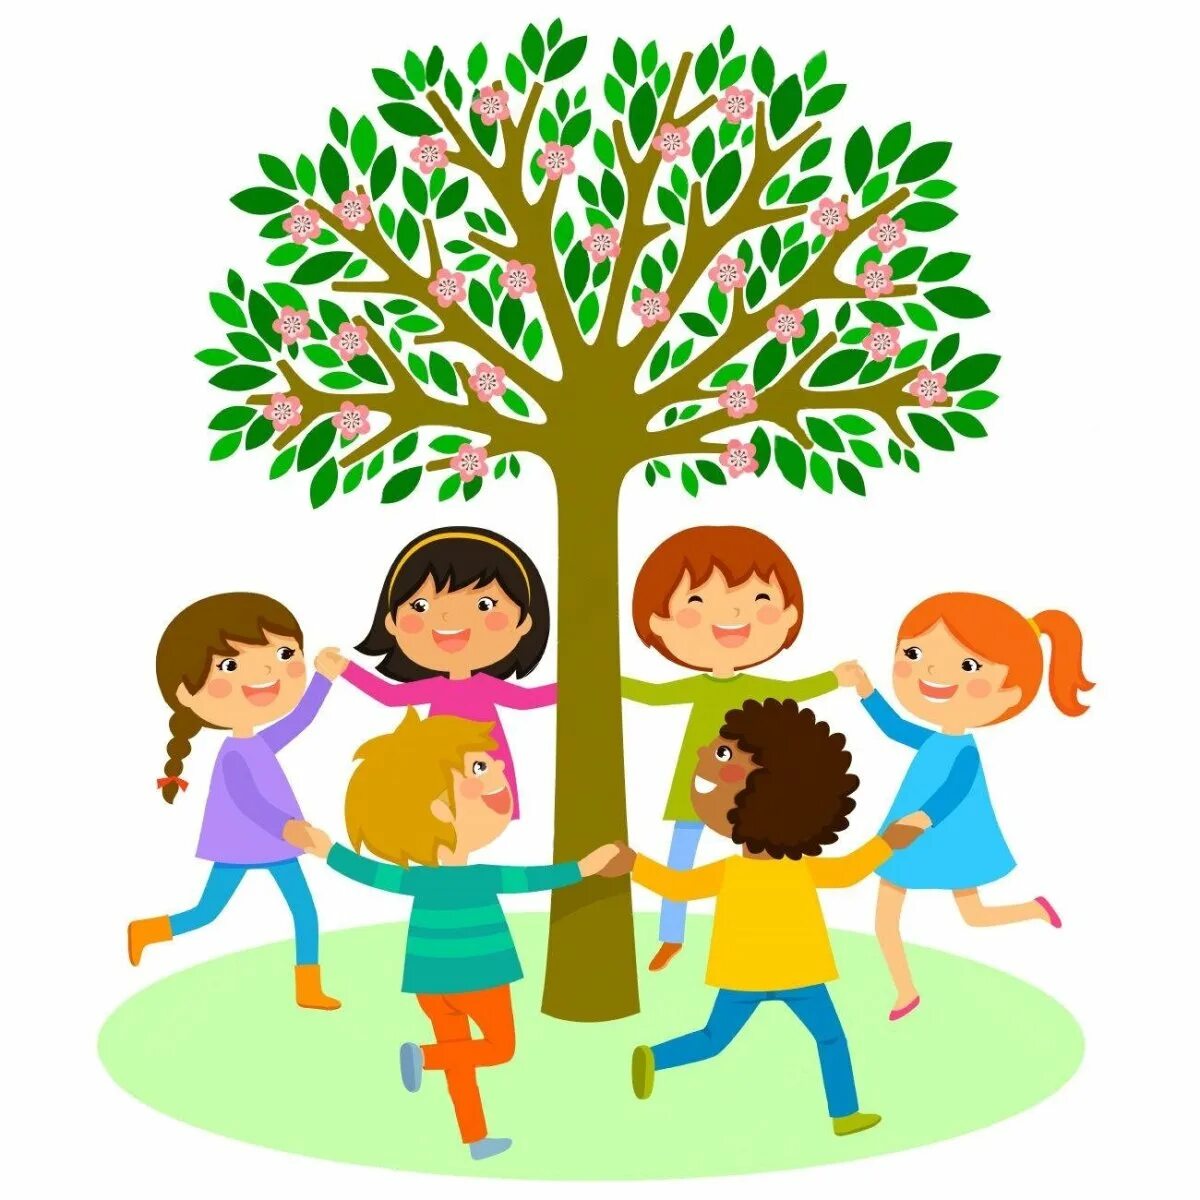 Посади дерево дружбы. Хоровод вокруг дерева. Дети вокруг дерева. Дерево для детей. Дерево дружбы на прозрачном фоне.